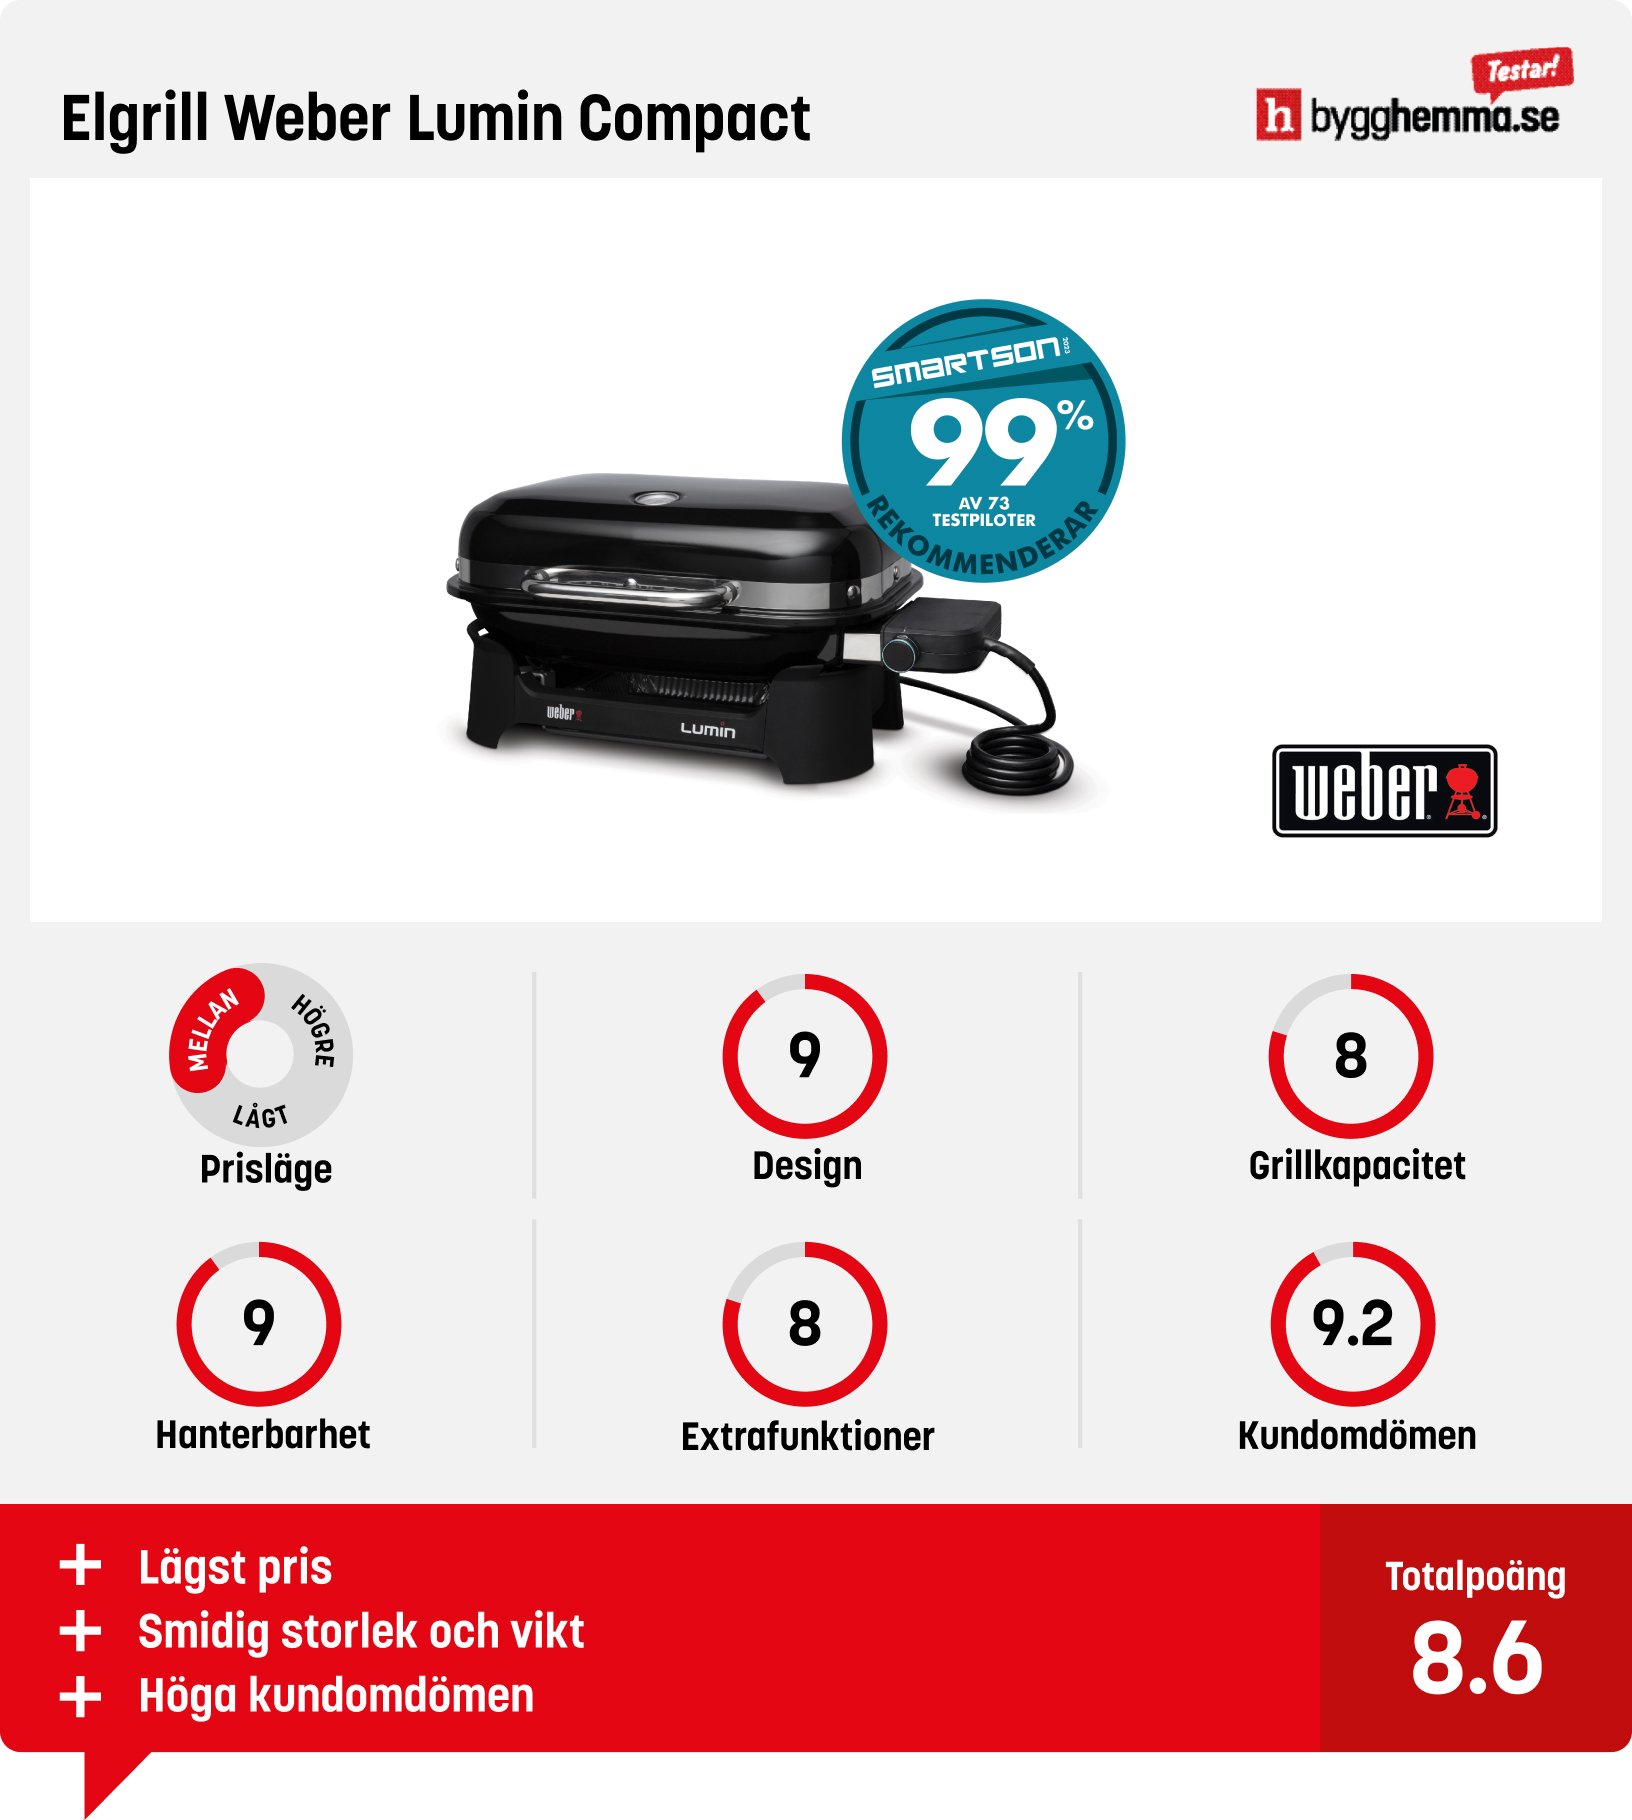 Elgrill bäst i test - Elgrill Weber Lumin Compact